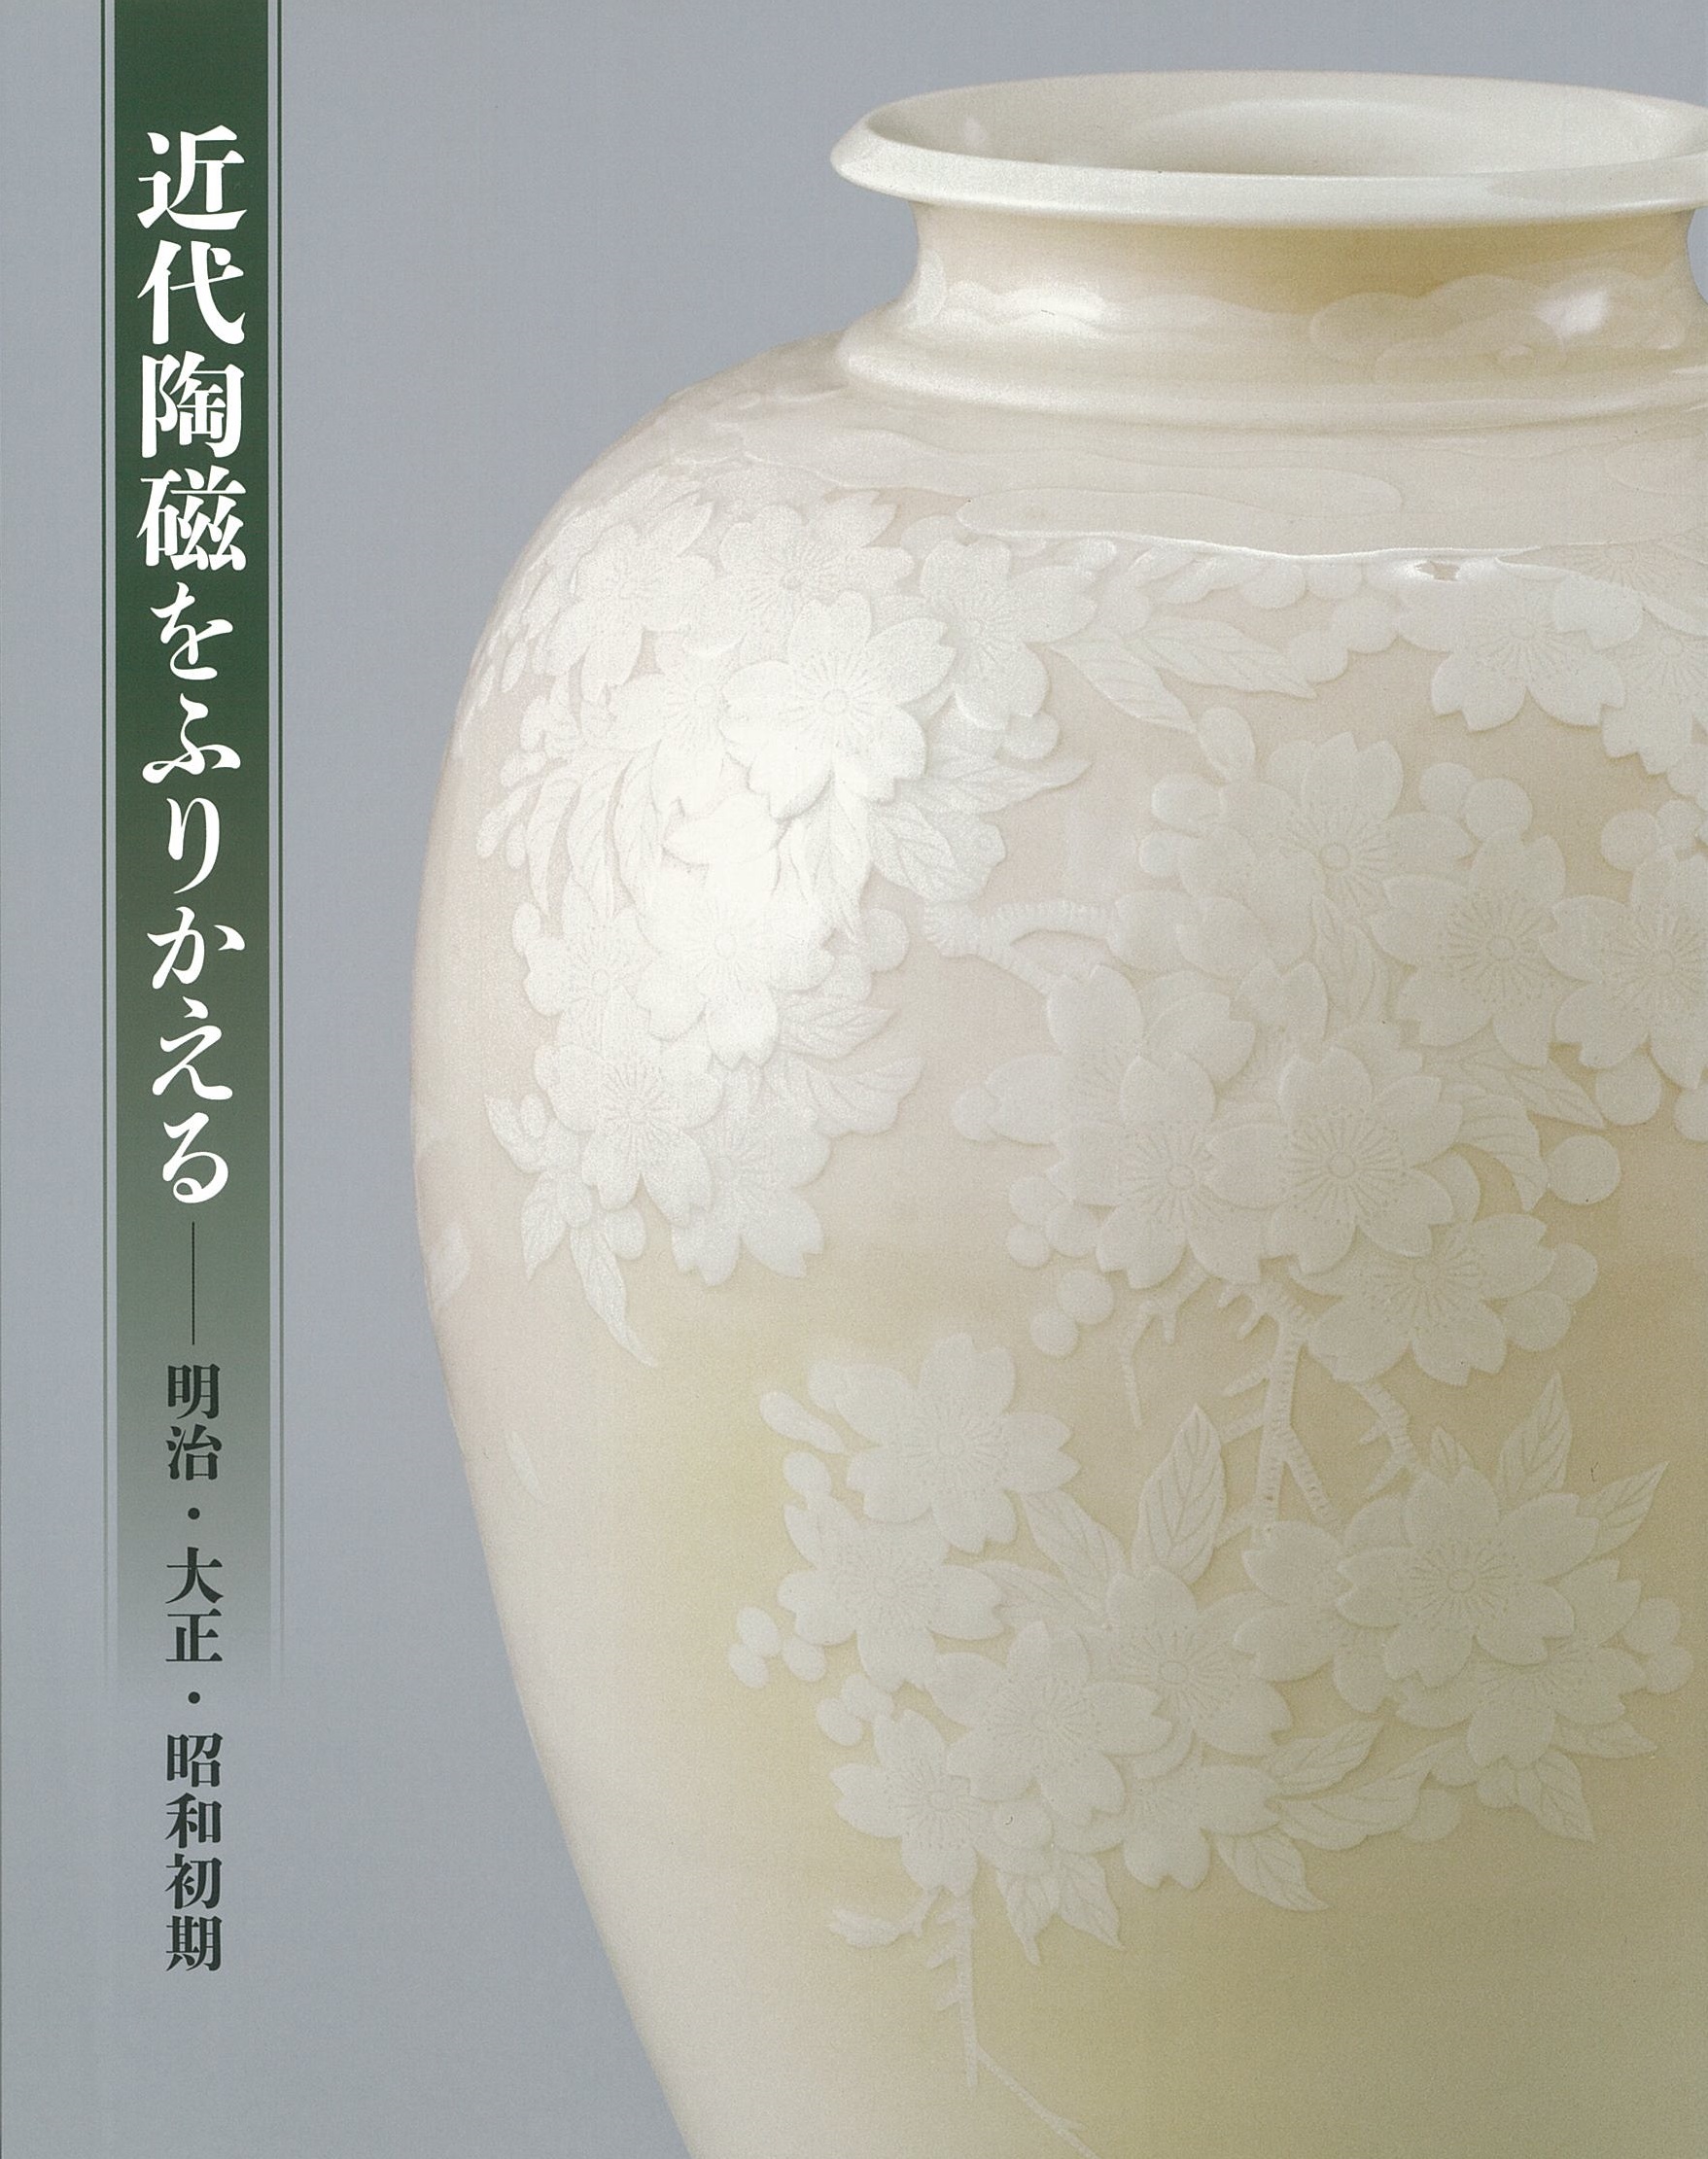 Reviewing Modern Ceramics – Meiji, Taisho, and Early Showa Eras